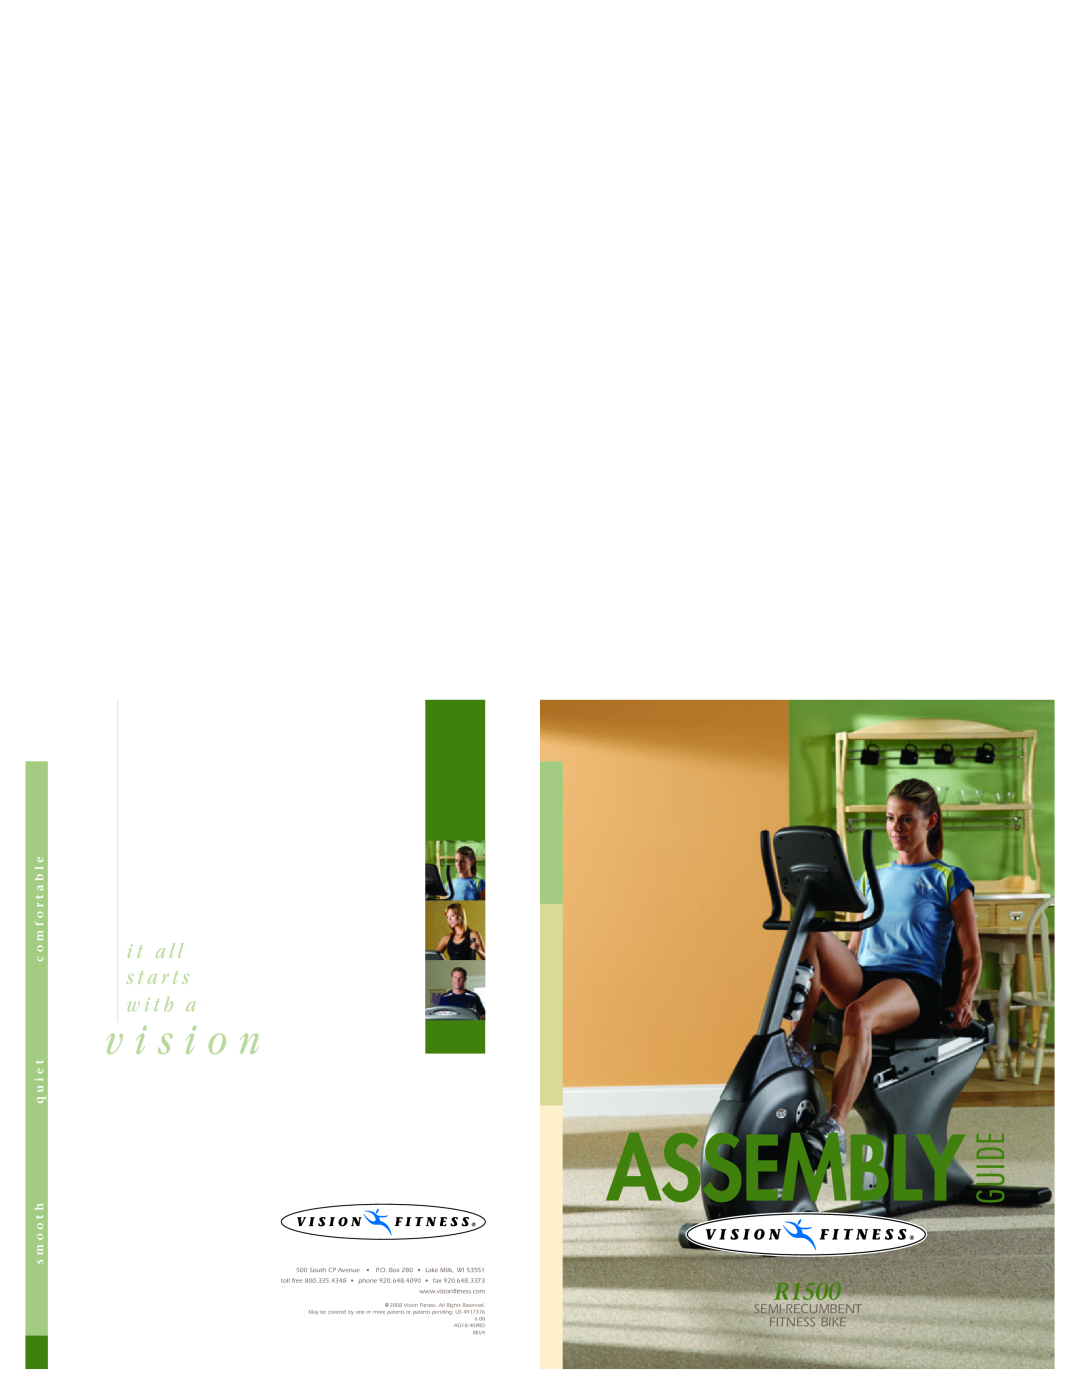 Vision Fitness R1500 manual Assembly Guide, v i s i o n, i t a l l s t a r t s w i t h a, Semi-Recumbent Fitness Bike 